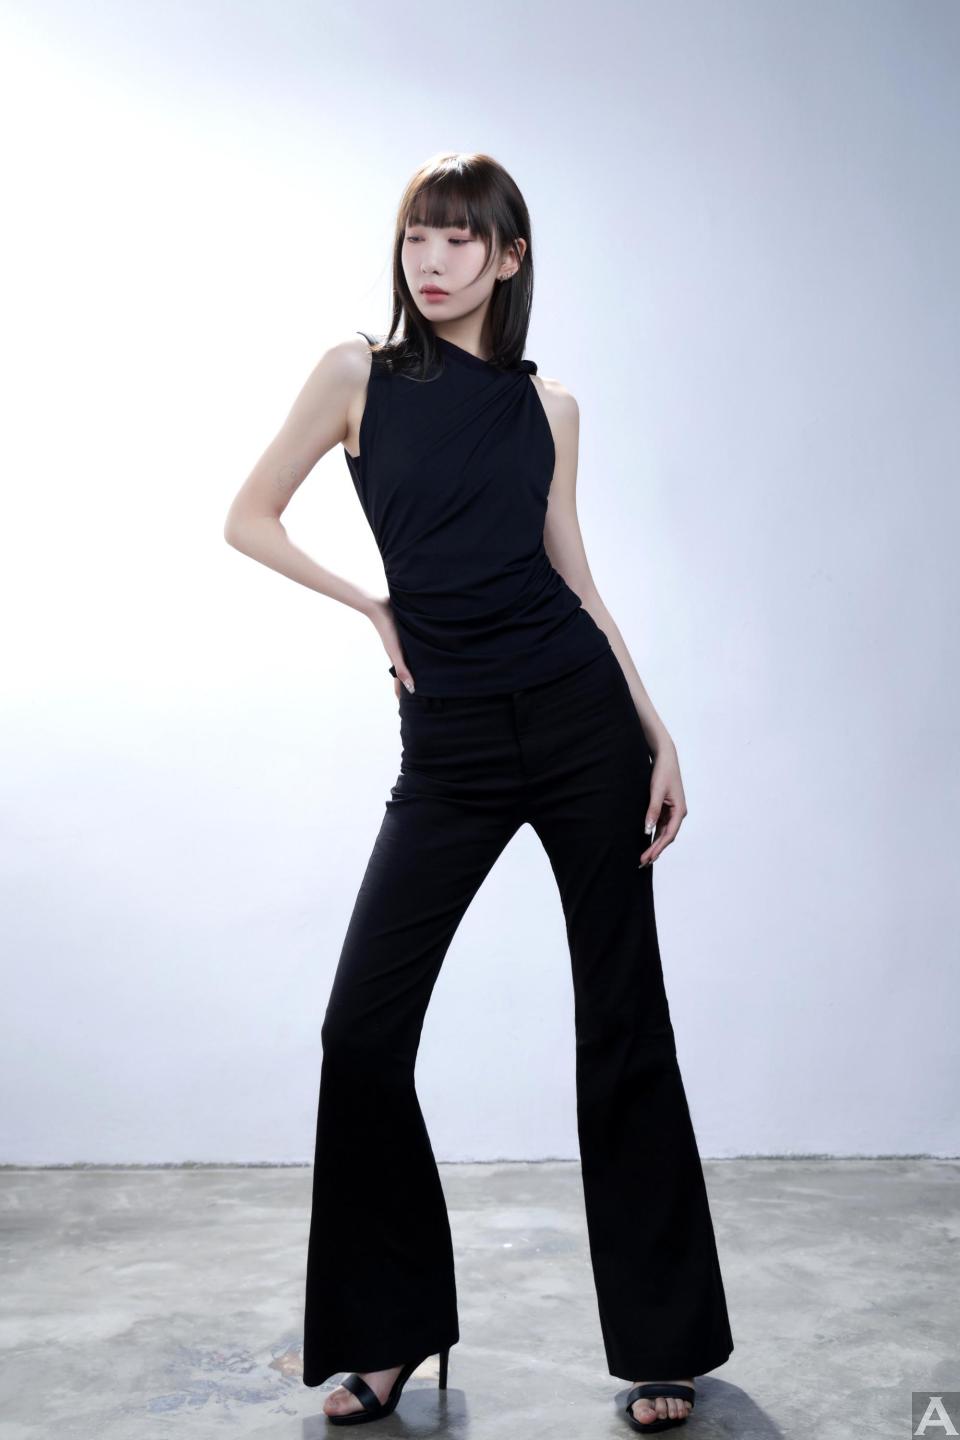 東京外国人モデル事務所アクアモデル所属のアジア人モデルのマックス